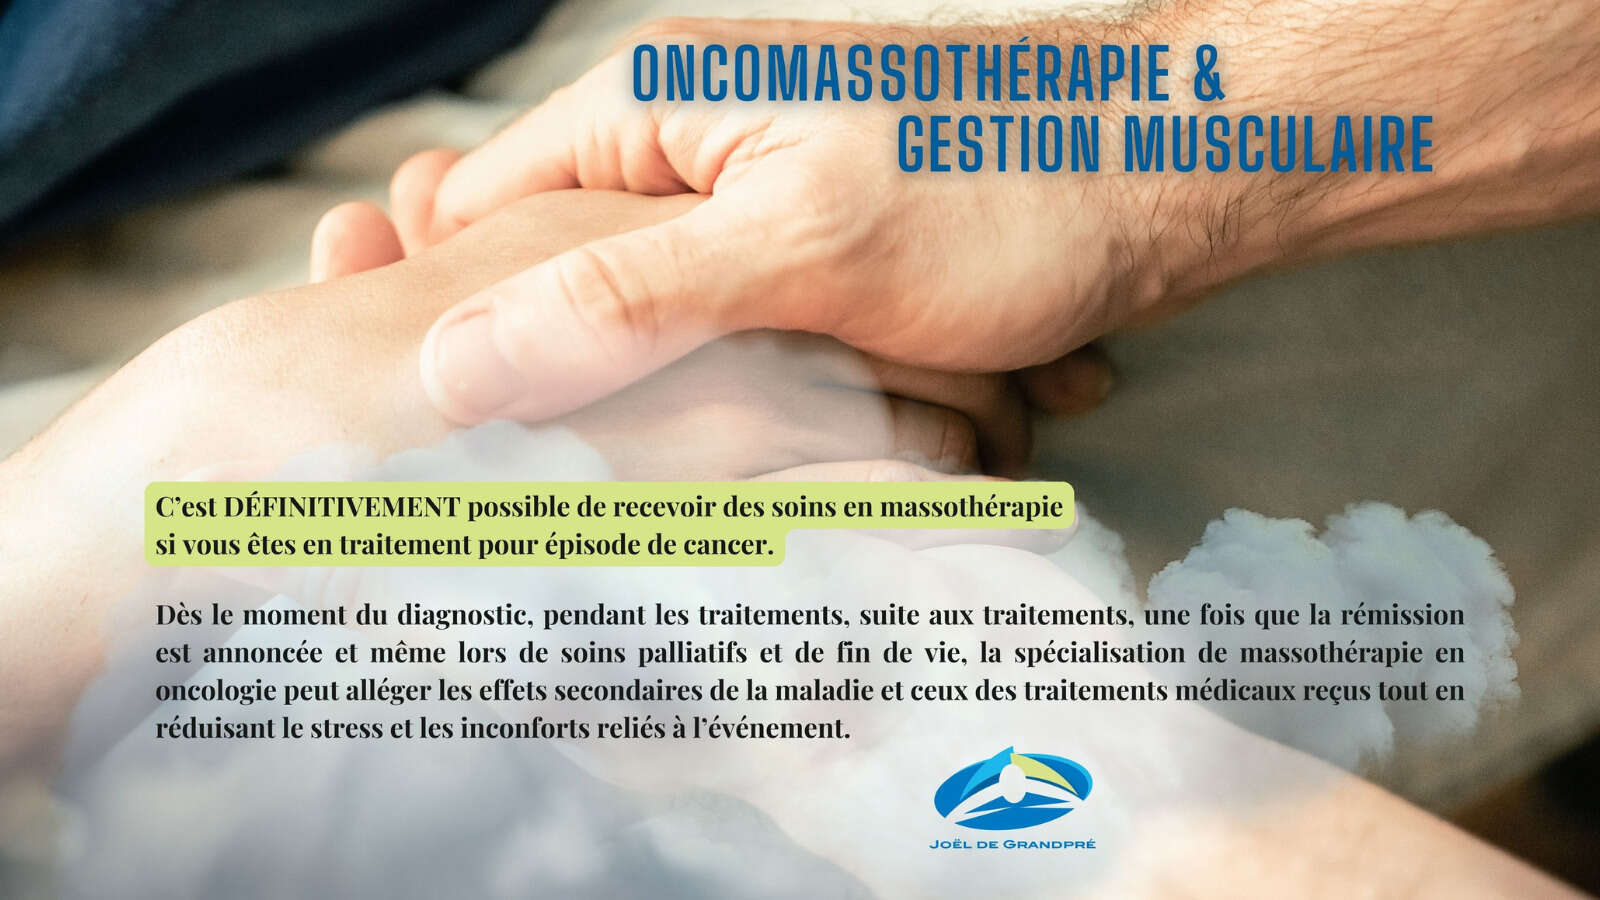 joel-de-grandpre-oncomassotherapie-et-gestion-musculaire-3787.jpg